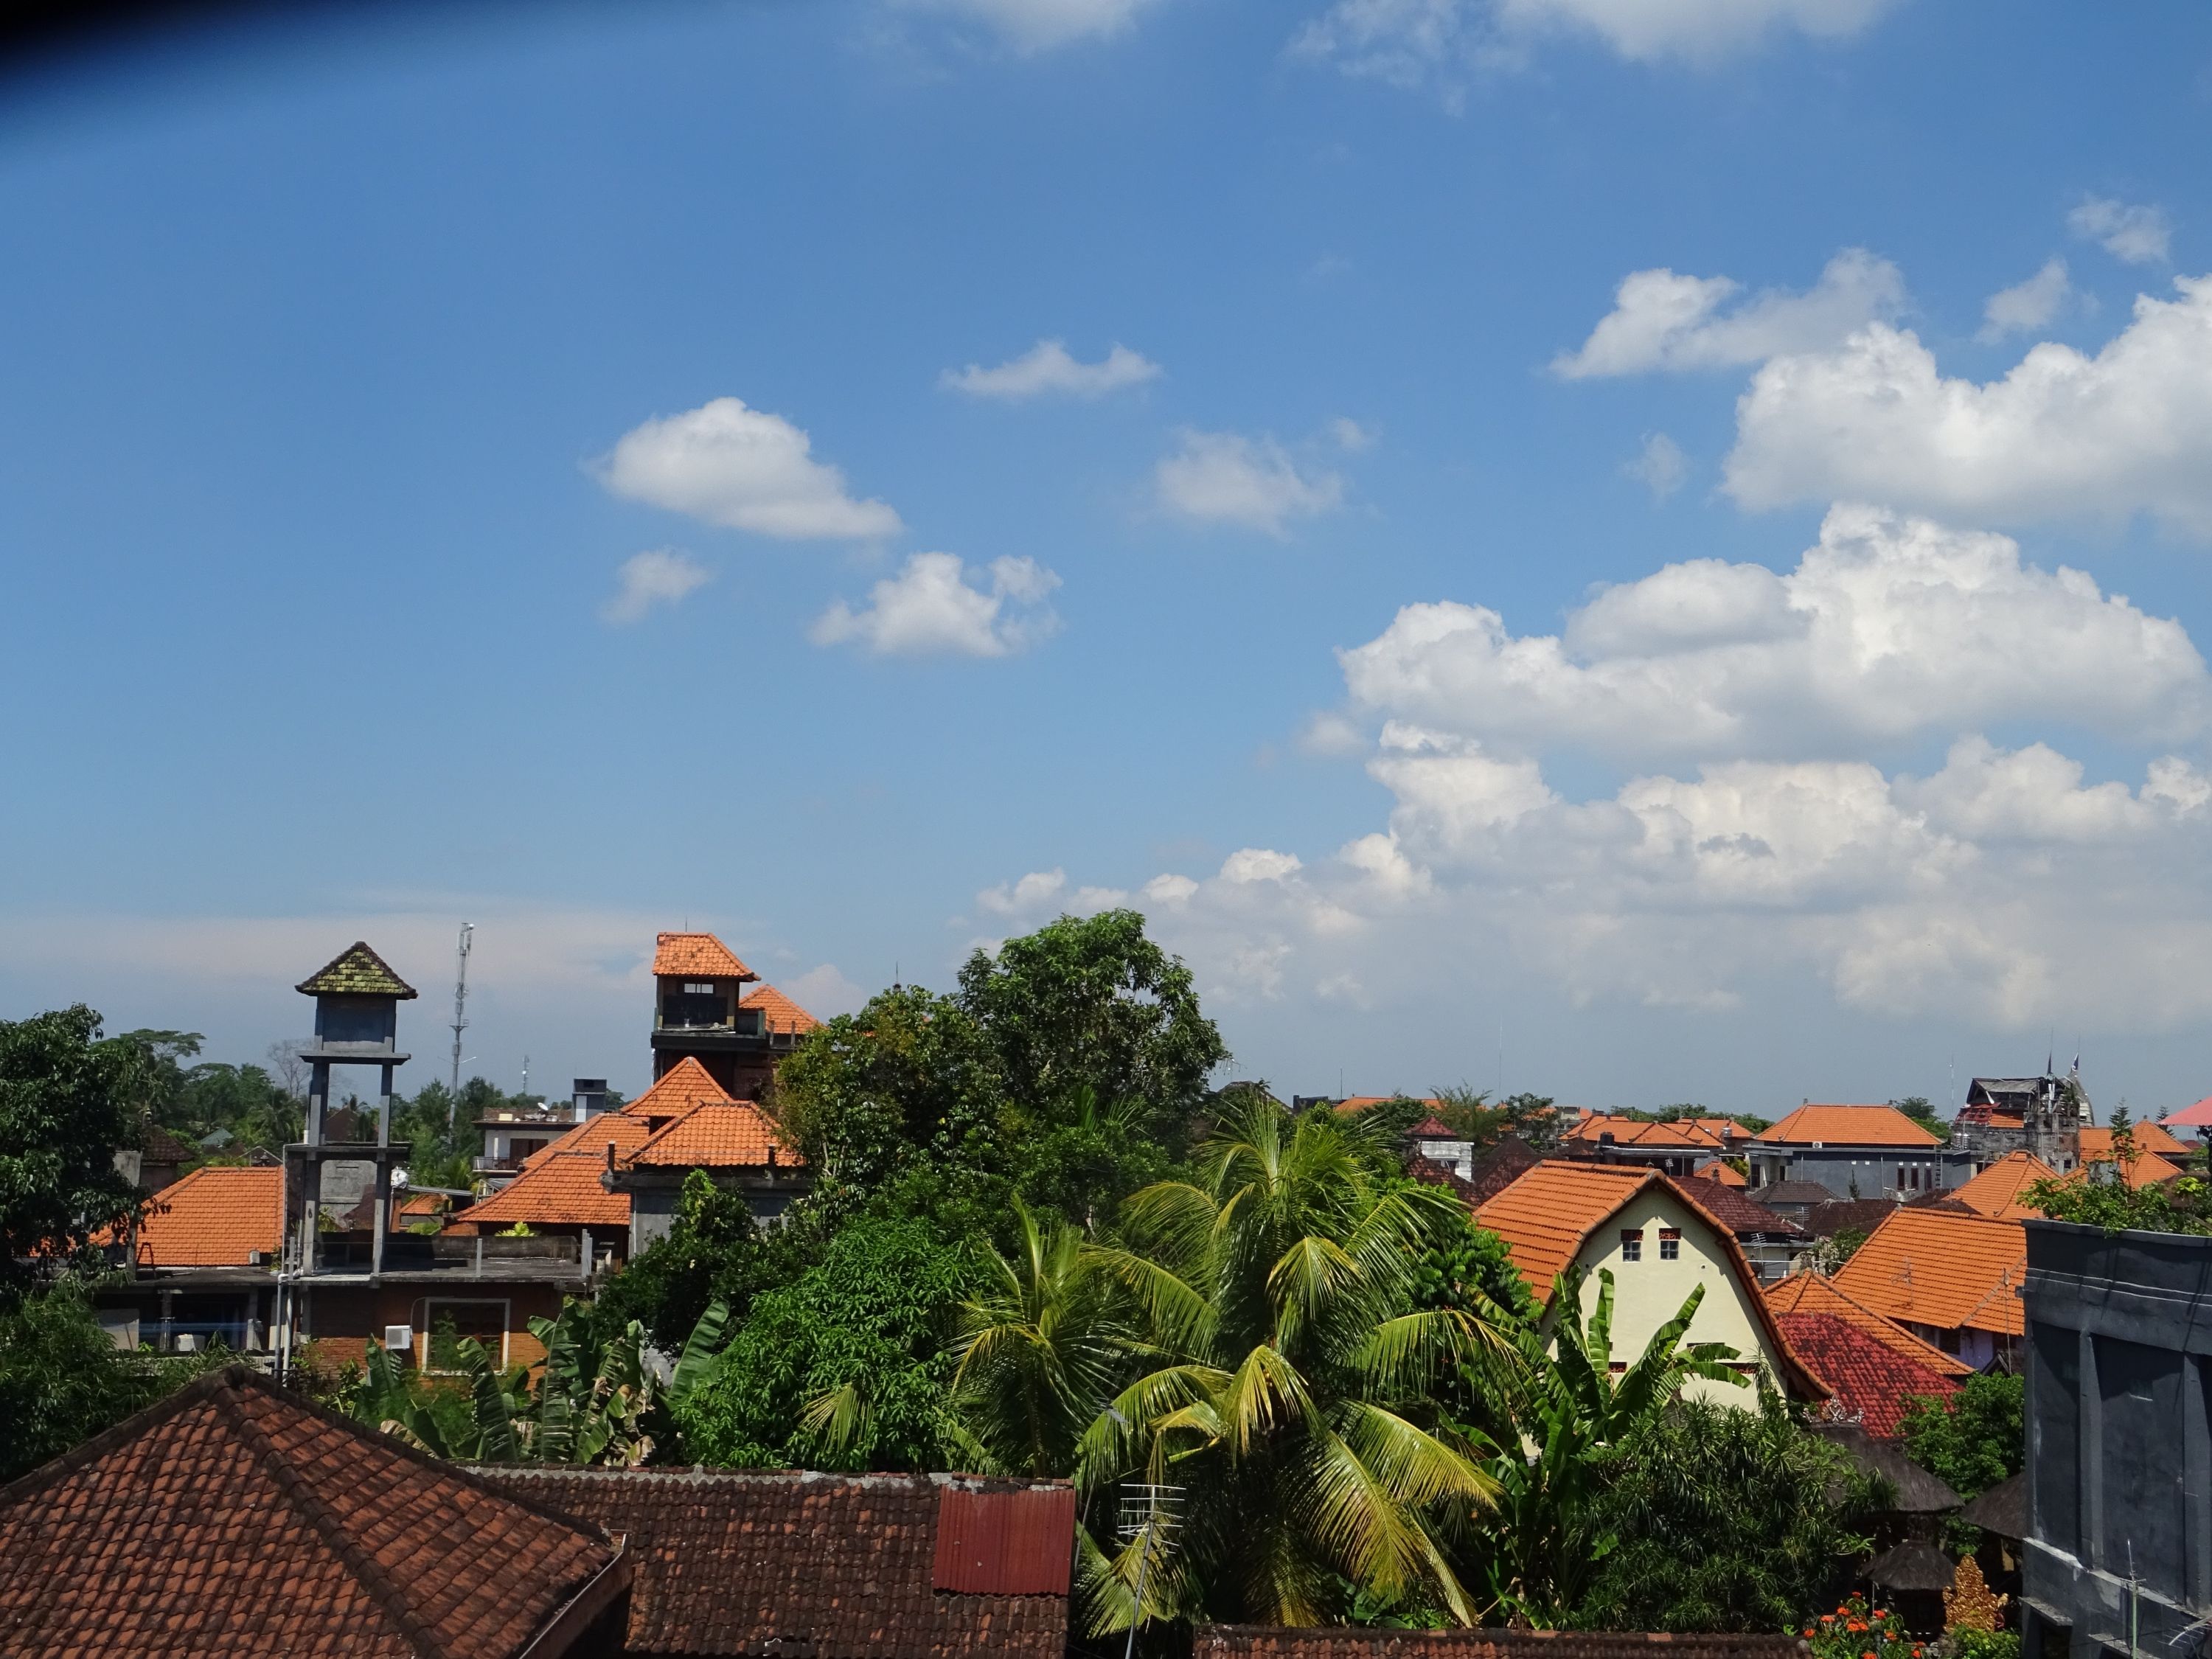  Blog  de voyage  en Indon sie Ubud  tout simplement magnifique